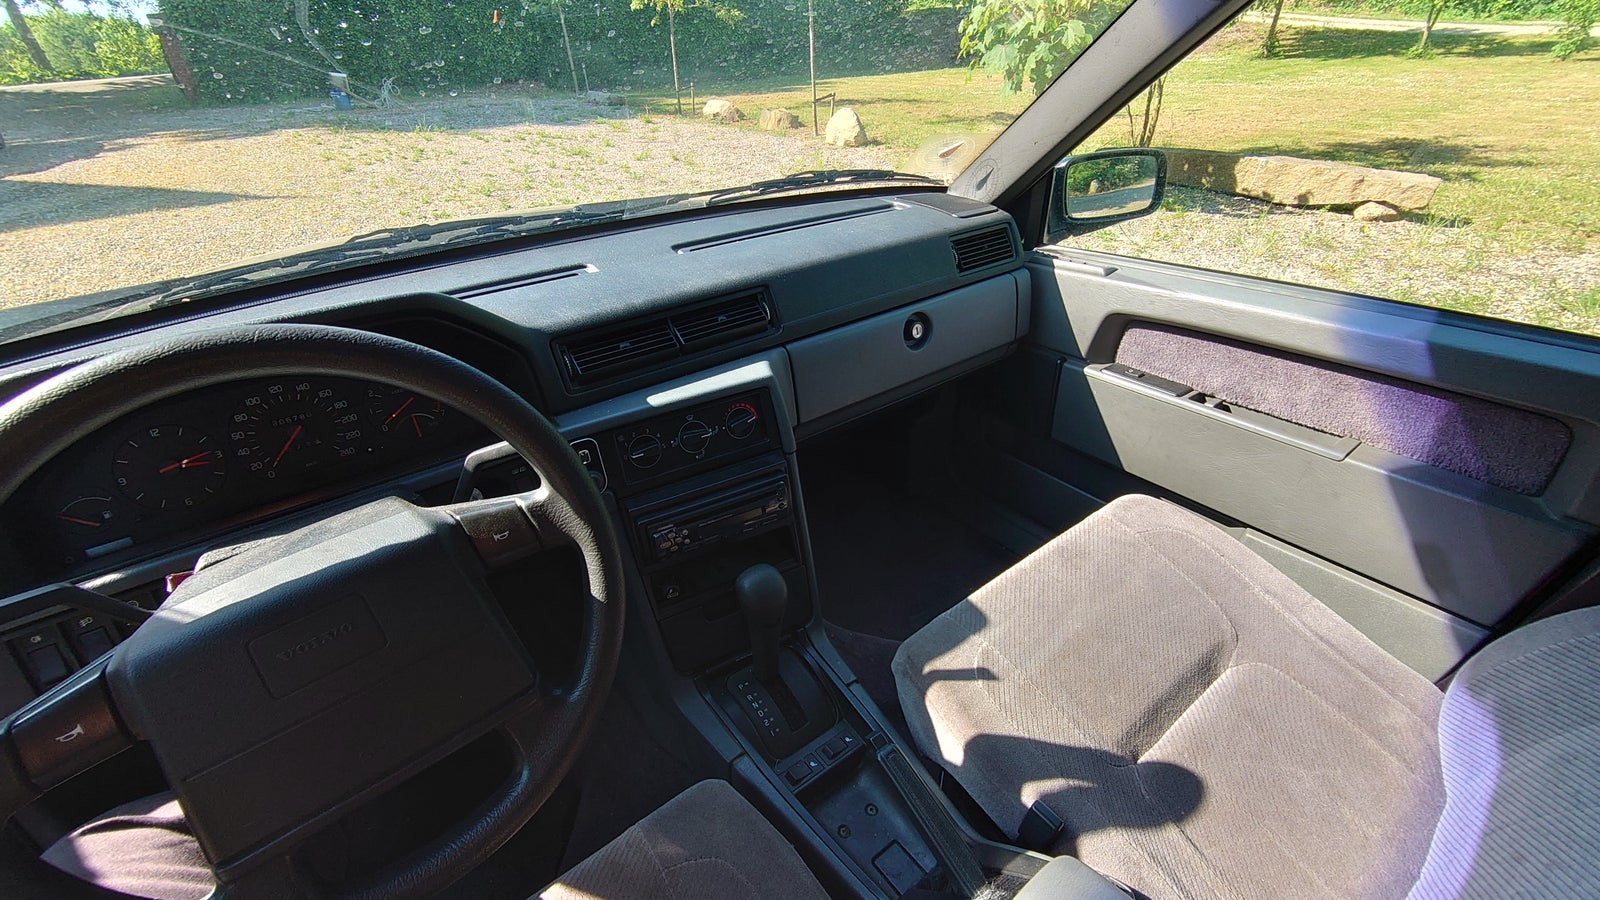 Volvo 940, 2,3 Turbo stc. aut., Benzin